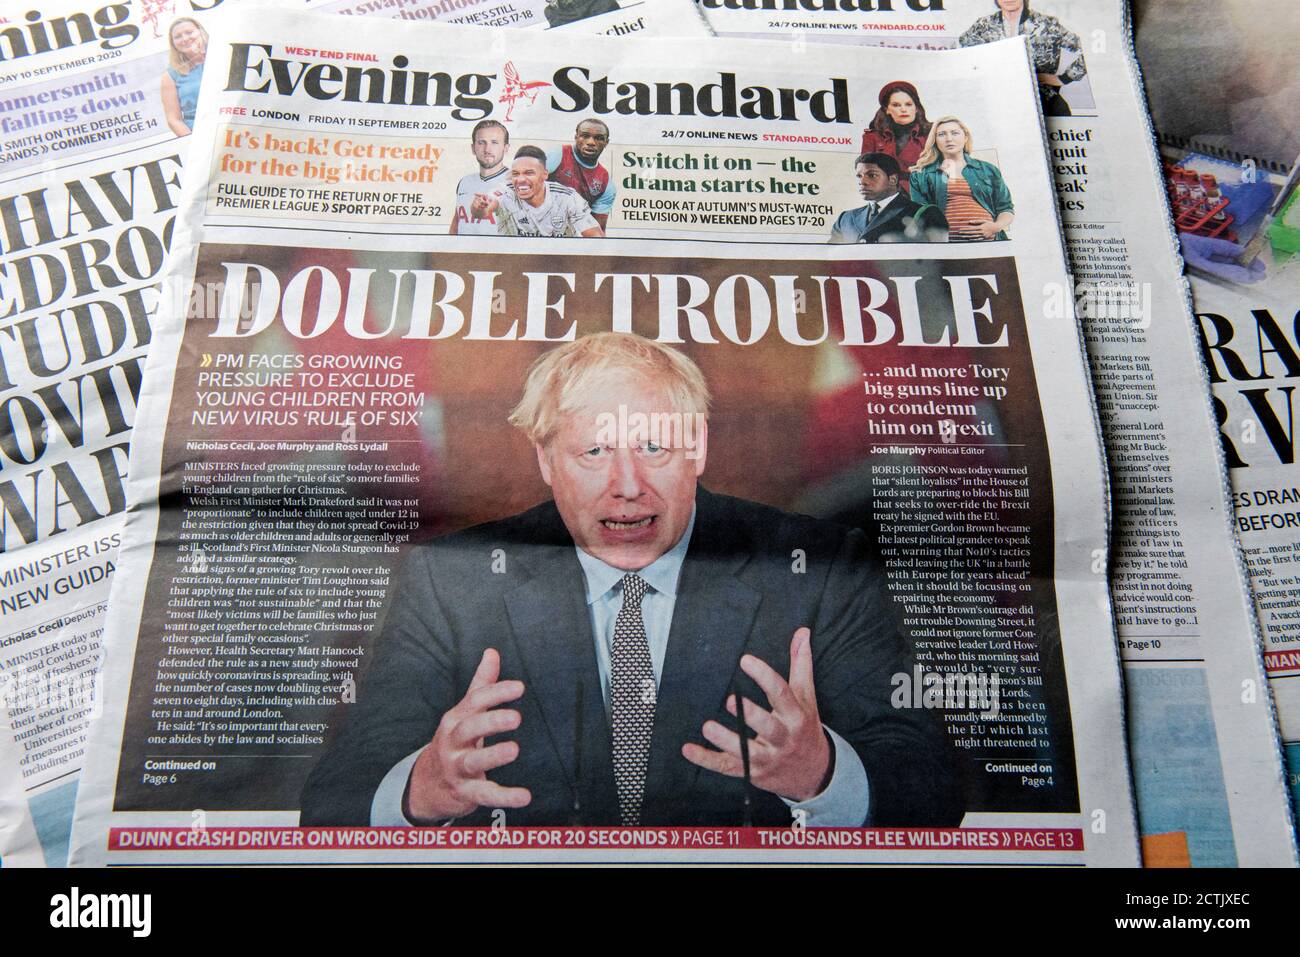 Evening Standard Zeitung Headline Friday11.September 2020 - Double Trouble - Kinder und Regel der sechs in Bezug auf Coronavirus, Corvid19 Stockfoto